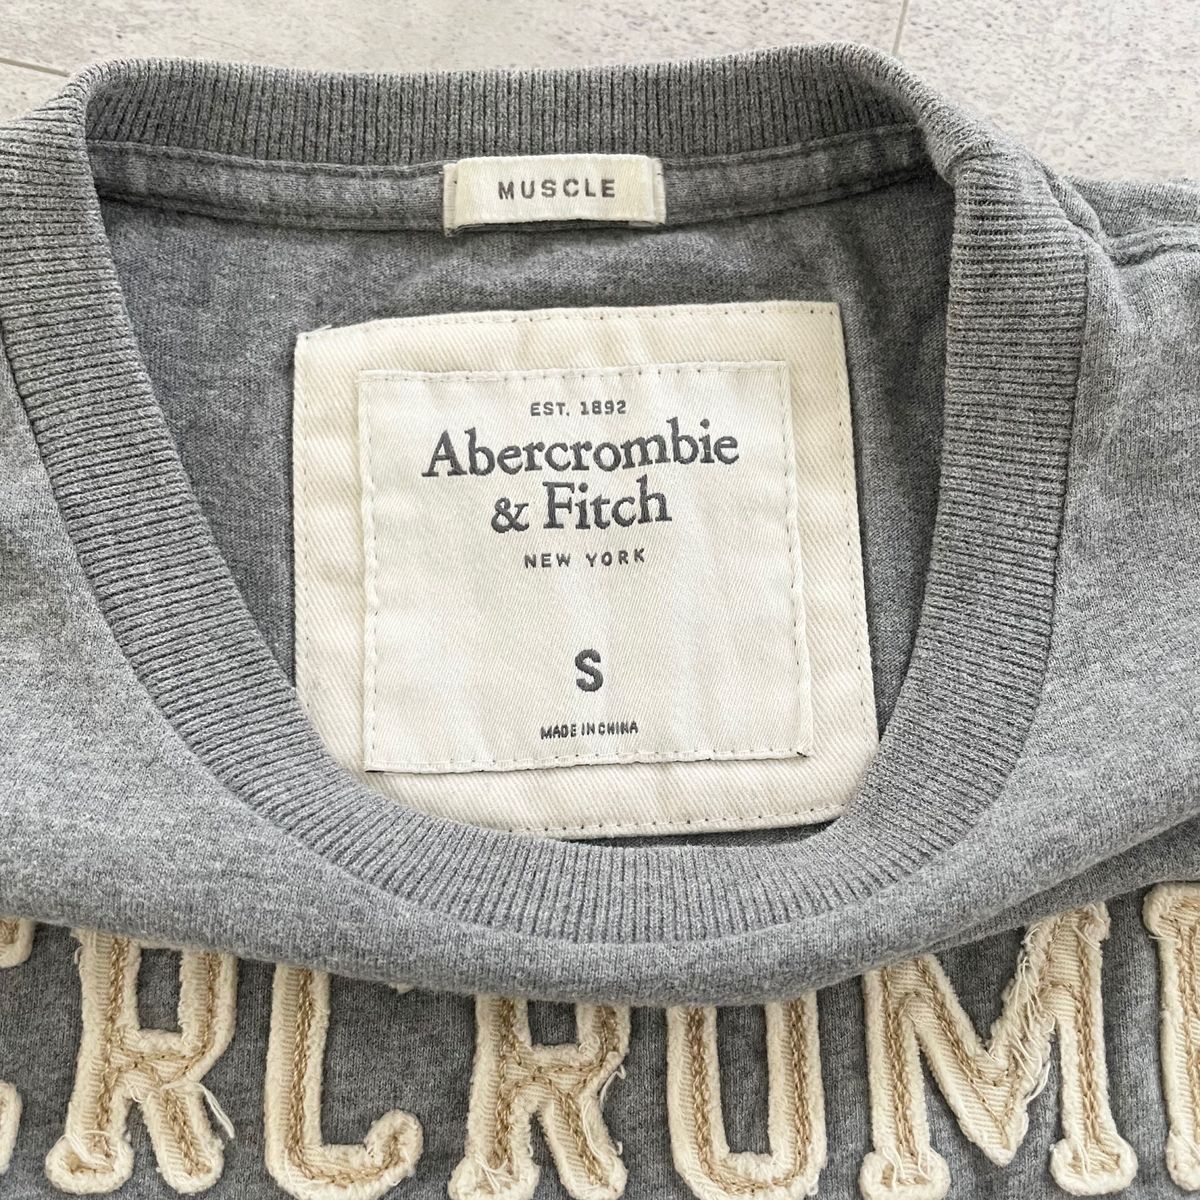 【美品】Abercrombie&Fitch アバクロ Tシャツ グレー